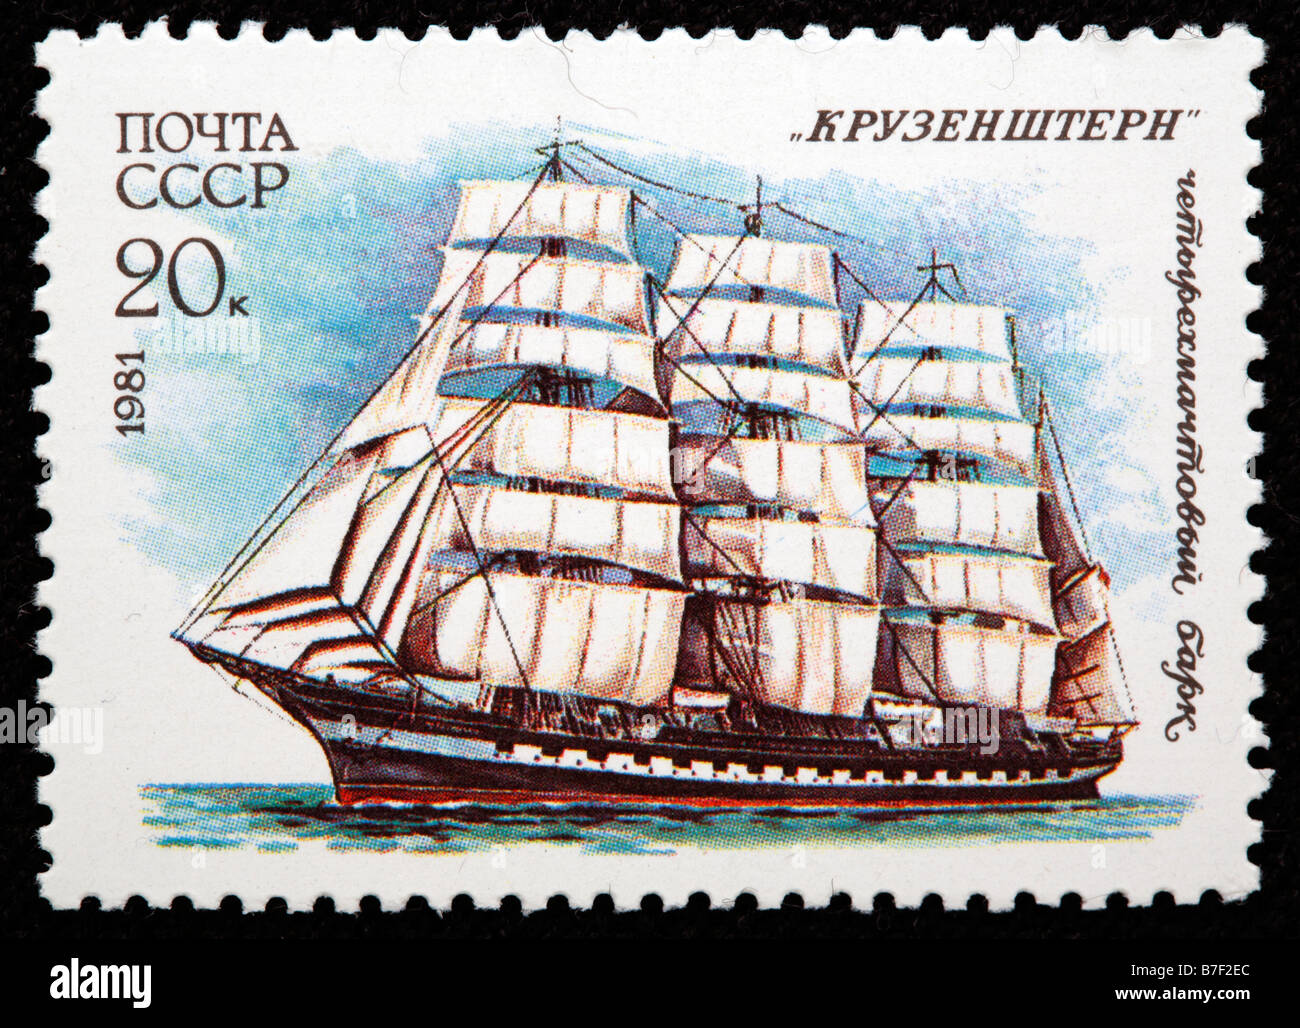 Russische Segel Schiff vier Masten Viermastbark "Krusenstern" (Krusenschtern), Briefmarke, UdSSR, Russland, 1981 Stockfoto